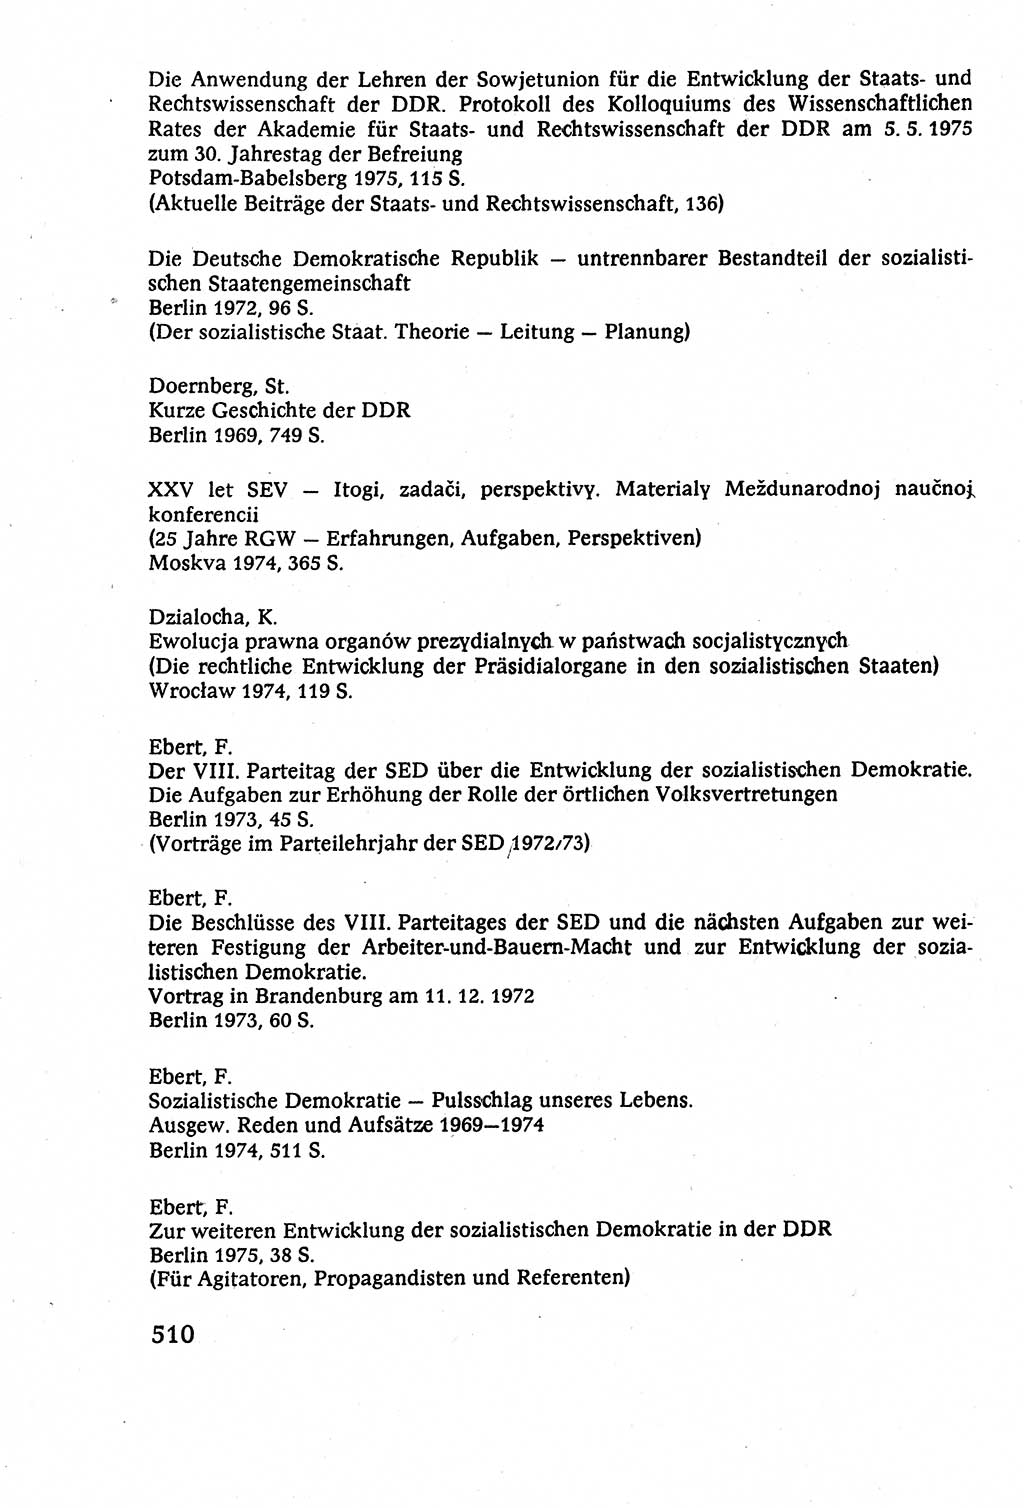 Staatsrecht der DDR (Deutsche Demokratische Republik), Lehrbuch 1977, Seite 510 (St.-R. DDR Lb. 1977, S. 510)